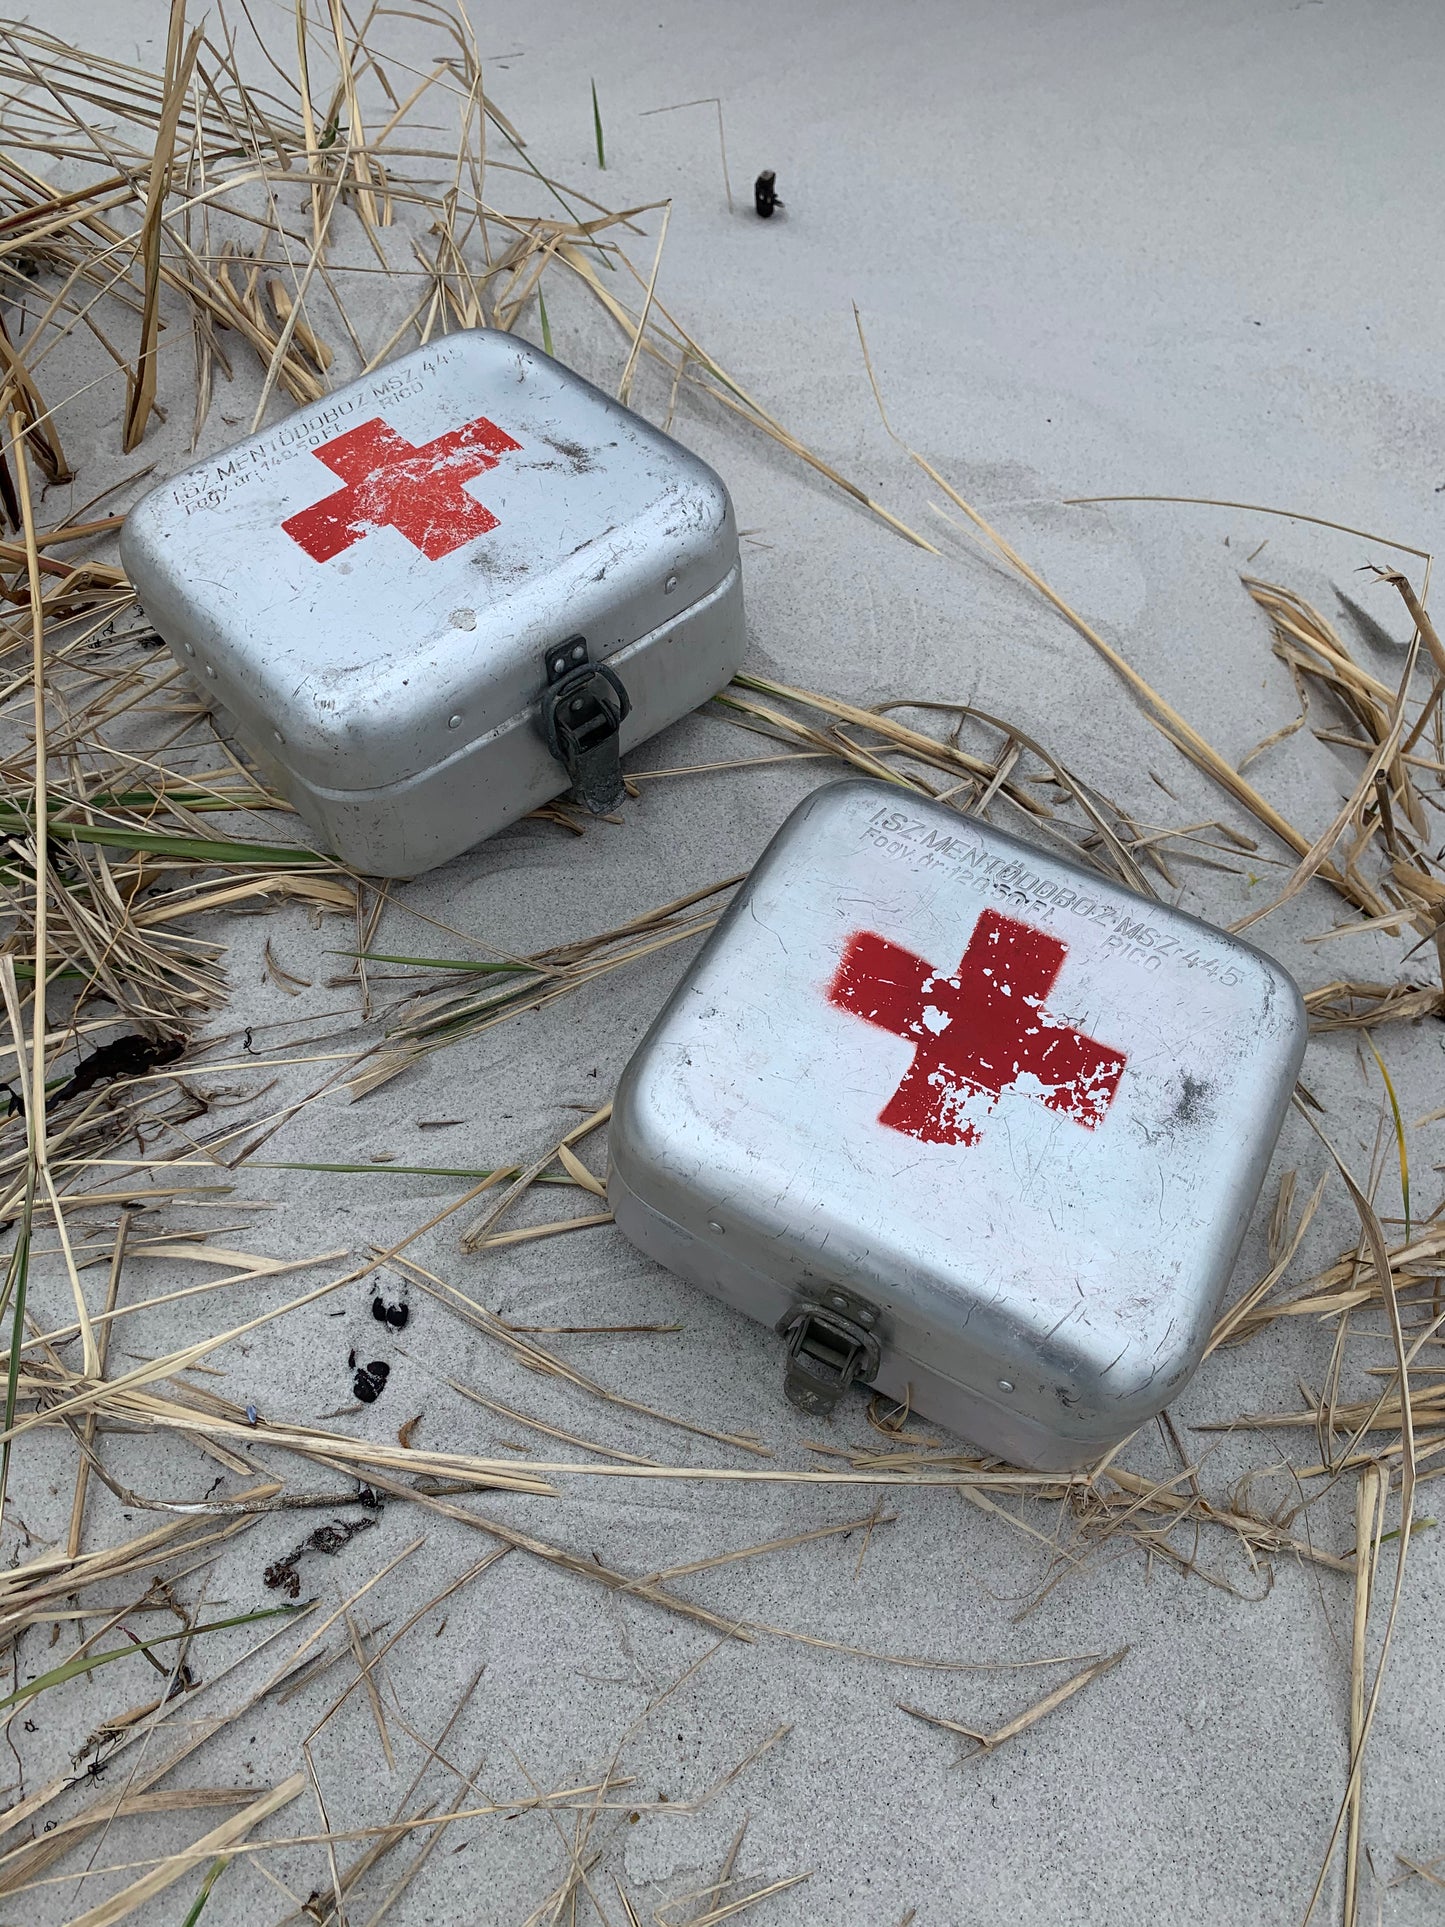 Rote Kreuz Box - Der Preis ist pro STCK.